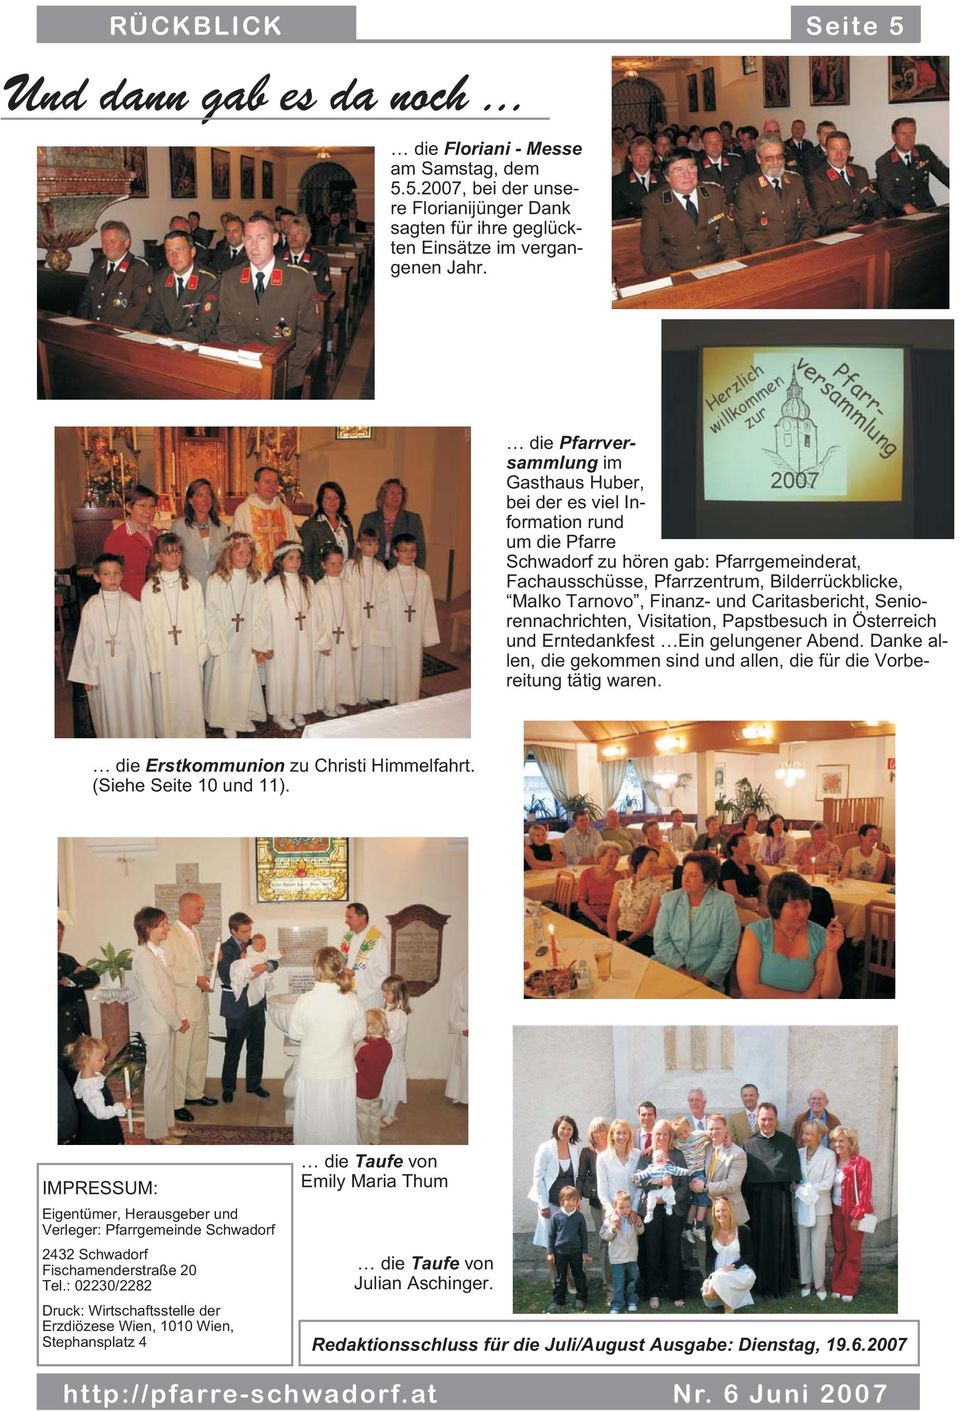 und Caritasbericht, Seniorennachrichten, Visitation, Papstbesuch in Österreich und Erntedankfest Ein gelungener Abend. Danke allen, die gekommen sind und allen, die für die Vorbereitung tätig waren.